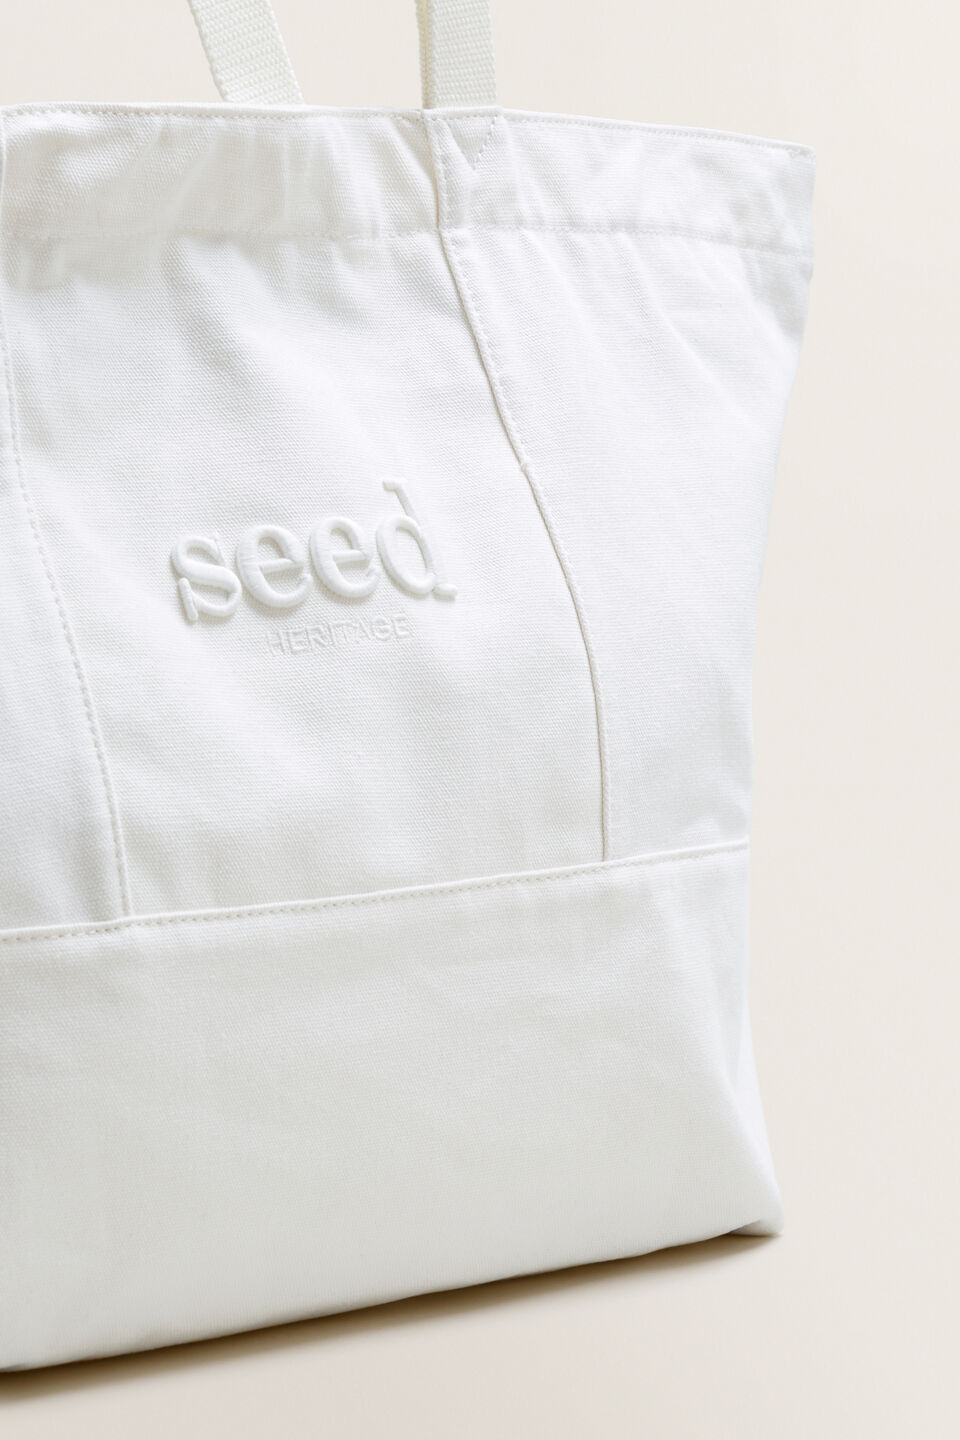 Seed Heritage Tote Bag  